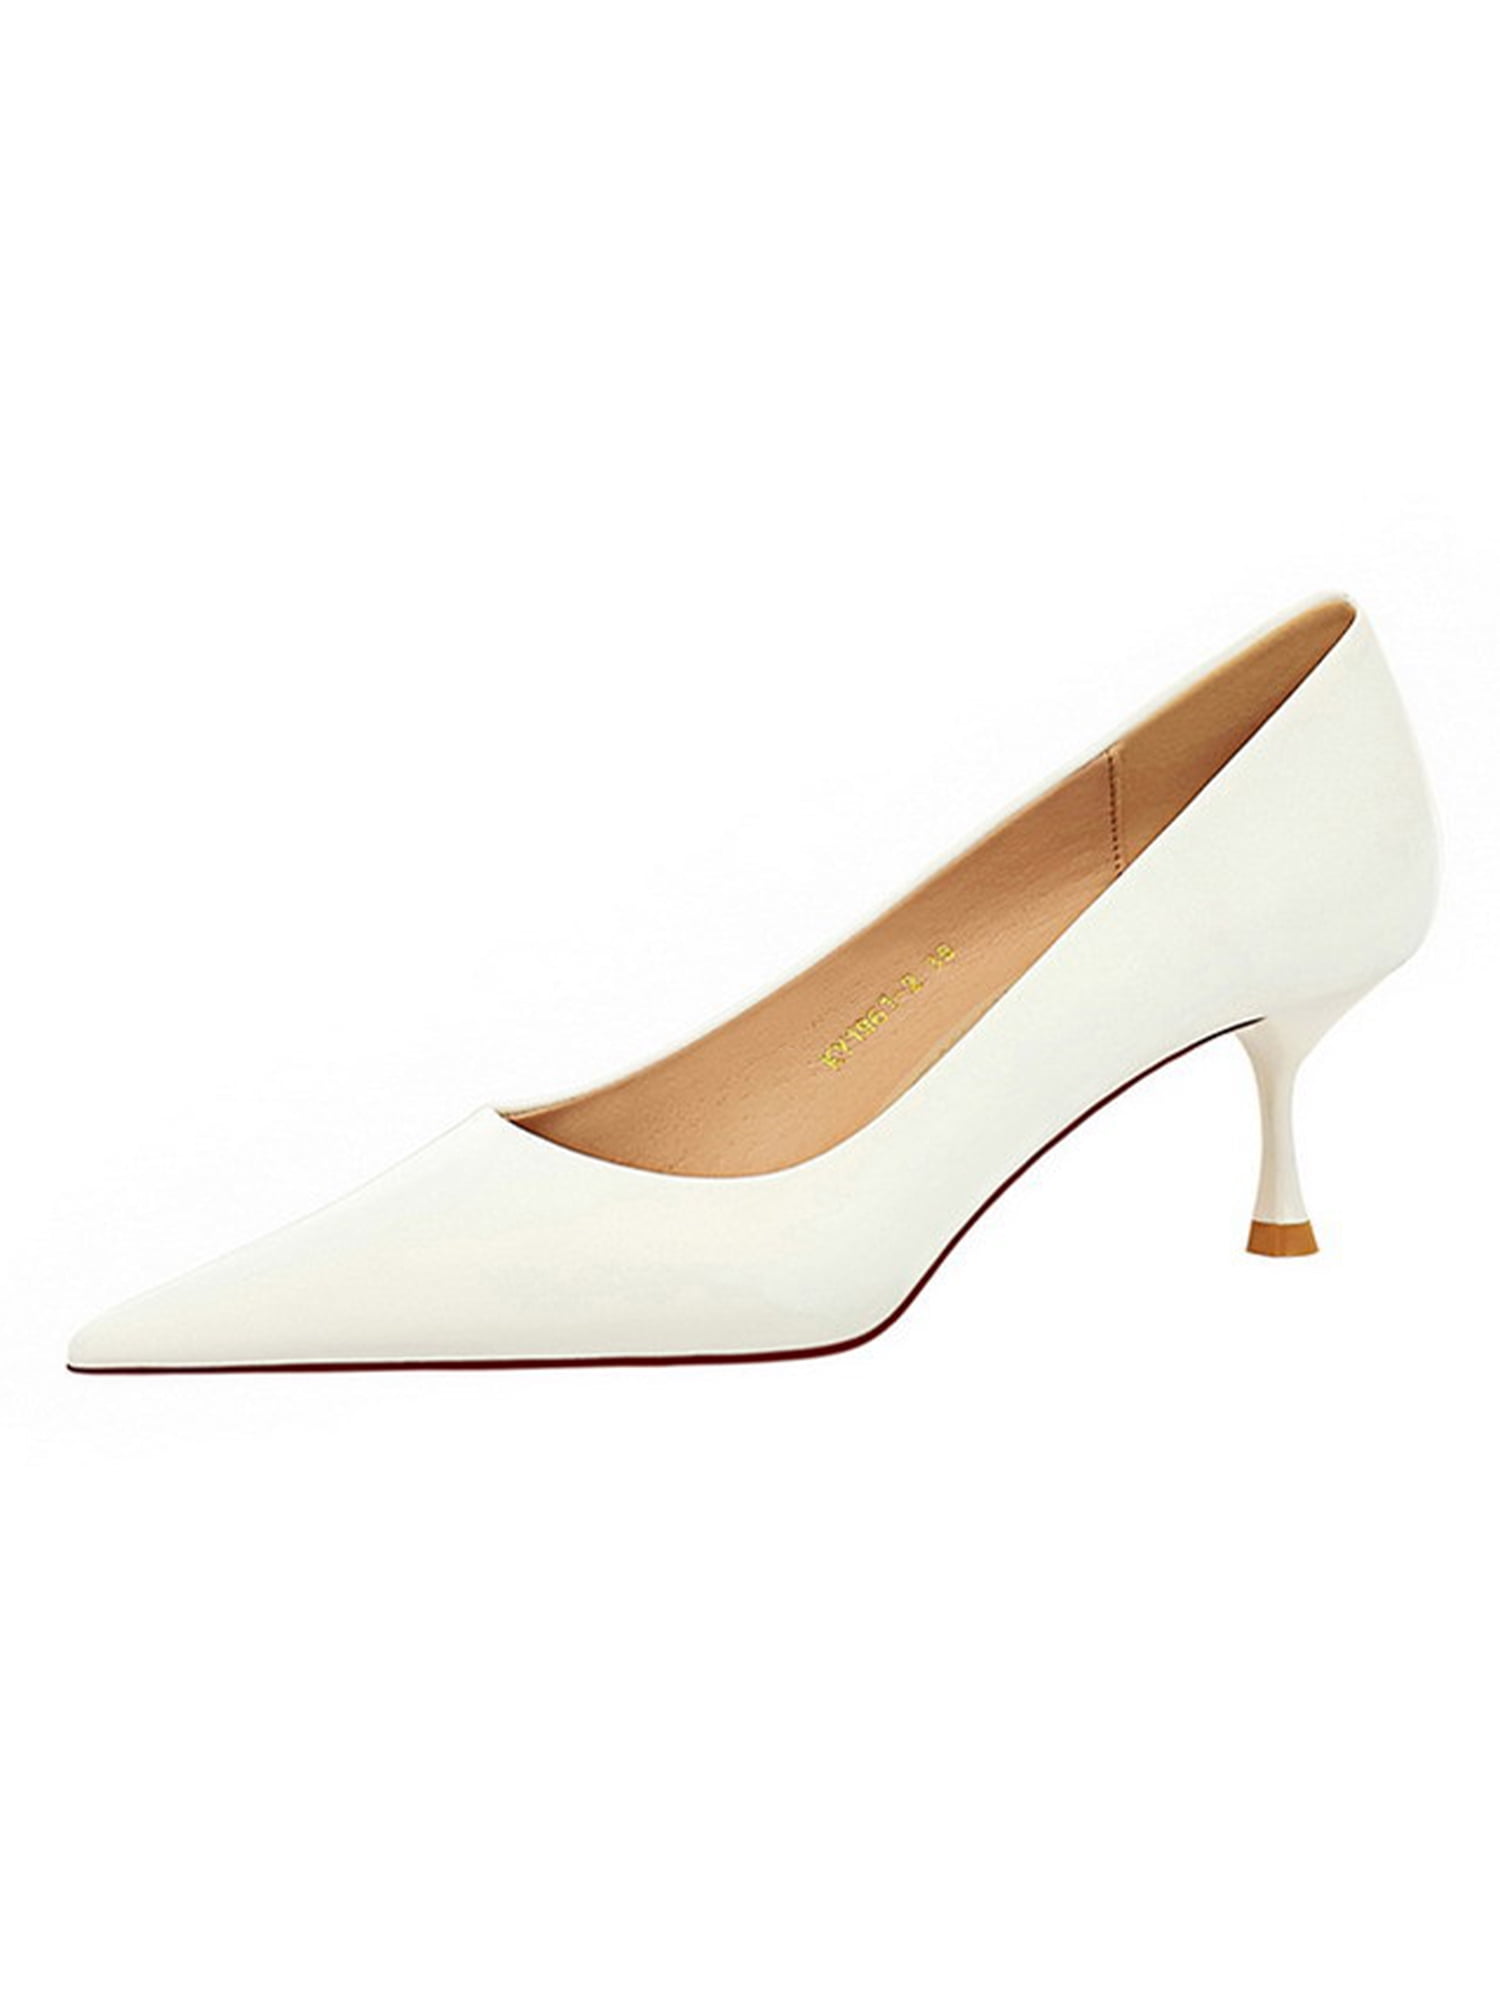 Zara Off-White Kitten Heel Sling-Back Shoes, Women's Fashion, Footwear,  Heels on Carousell